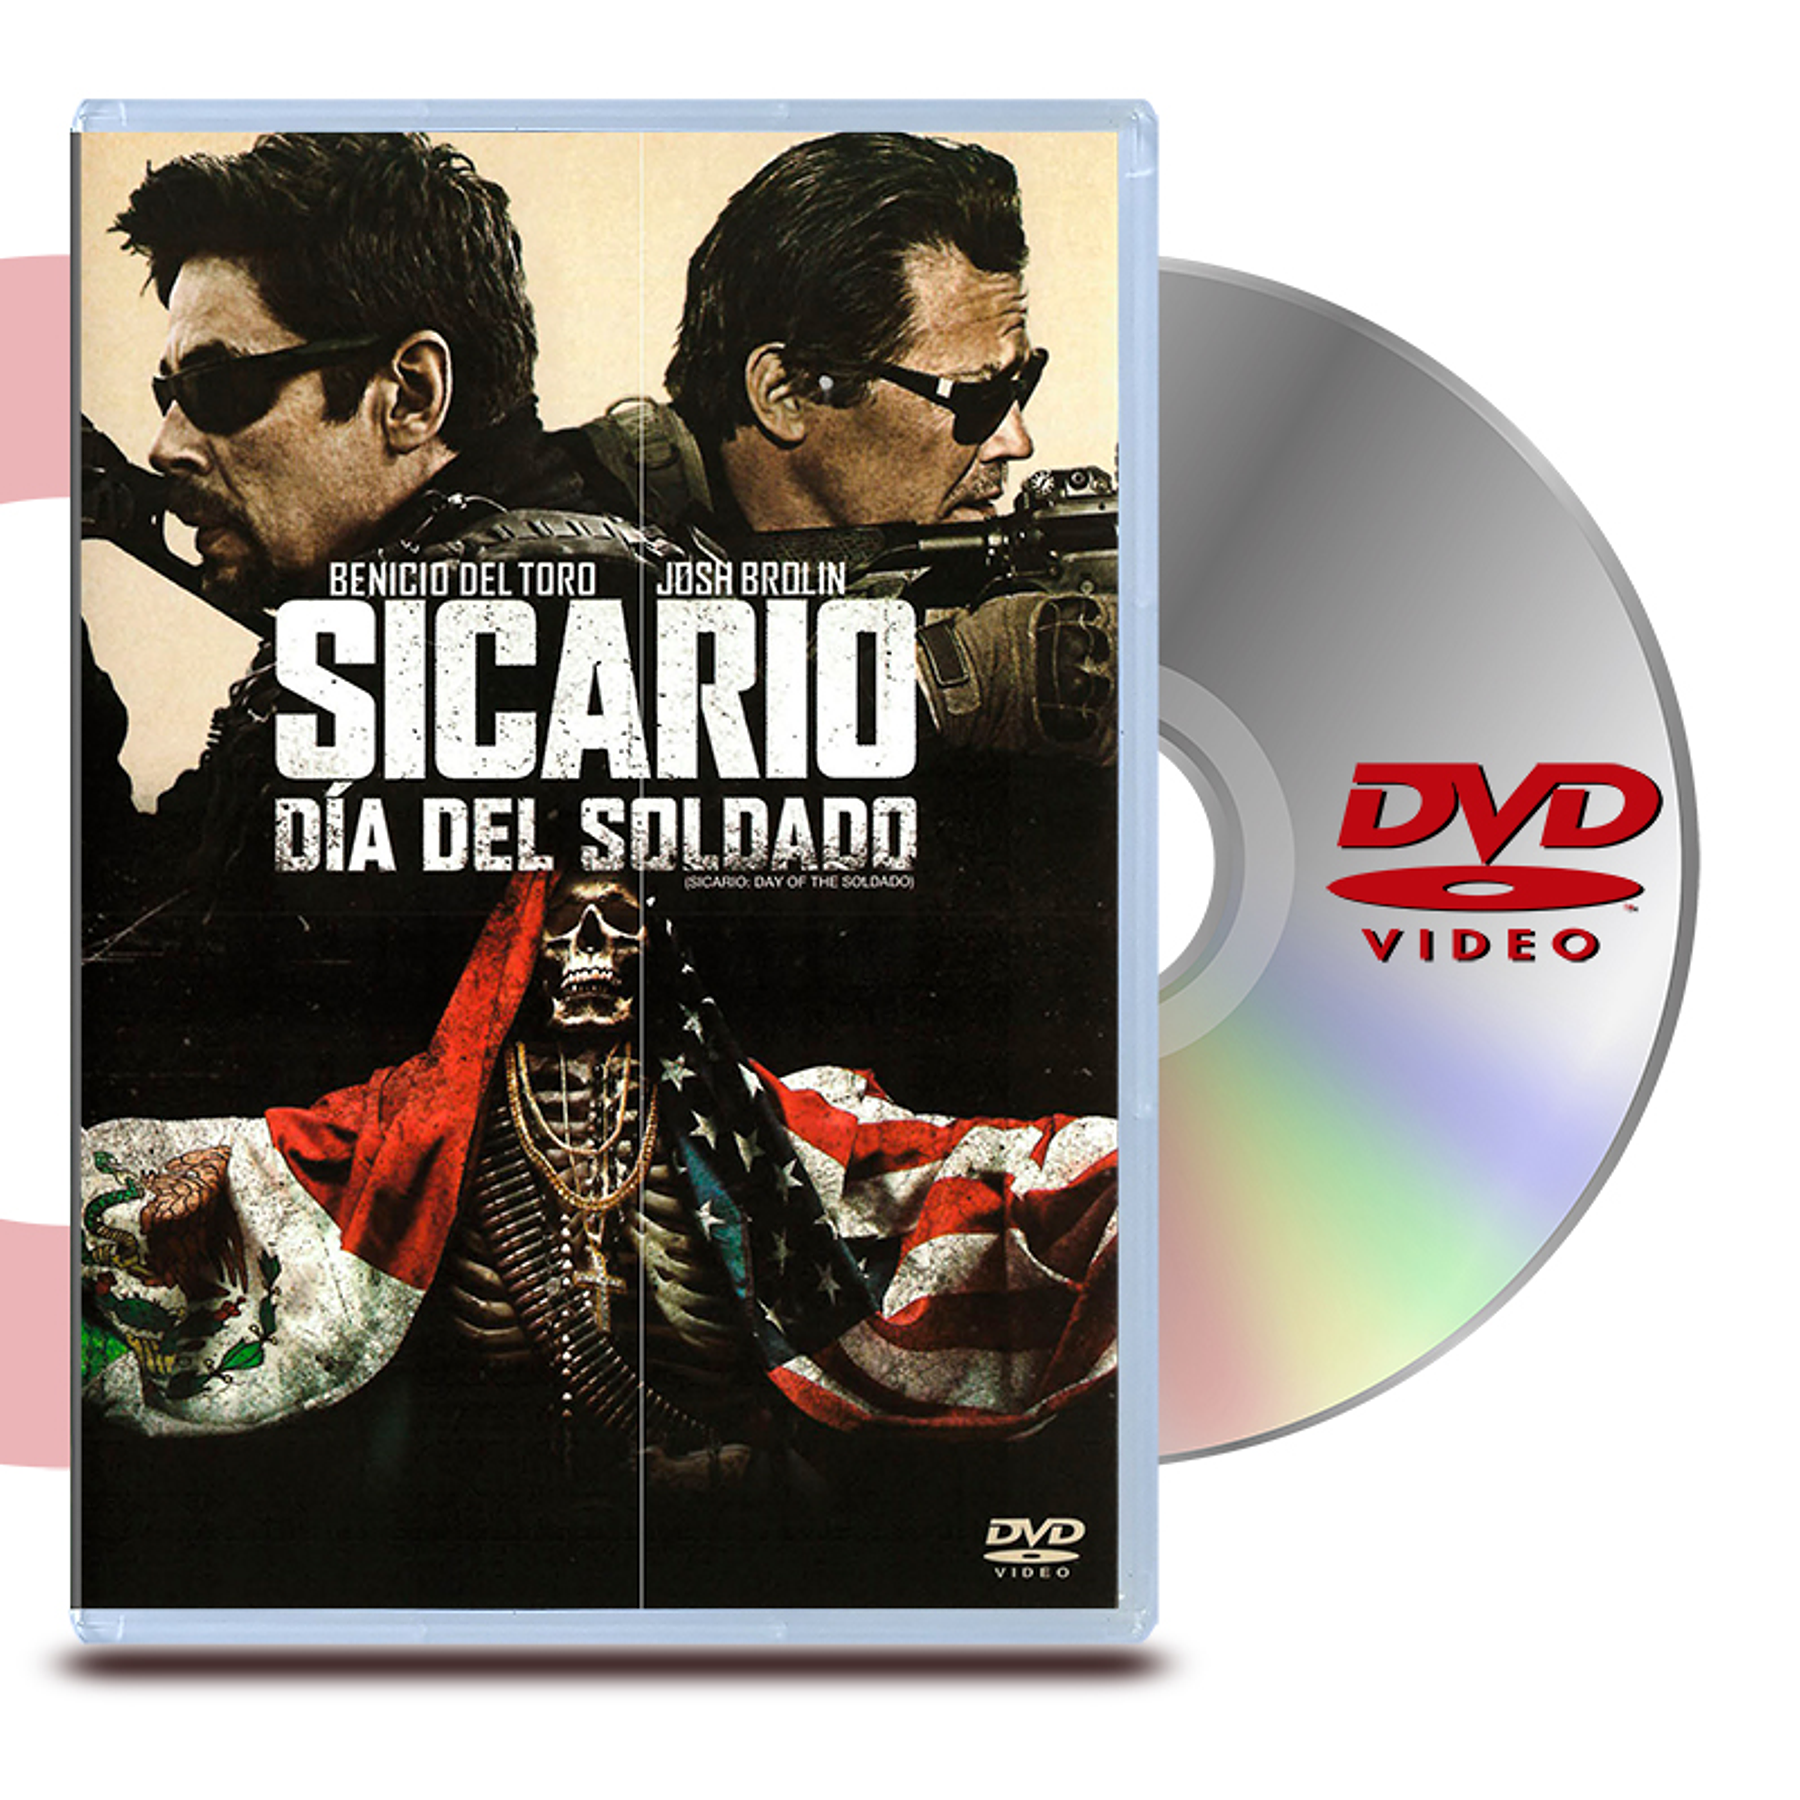 DVD SICARIO DIA DEL SOLDADO